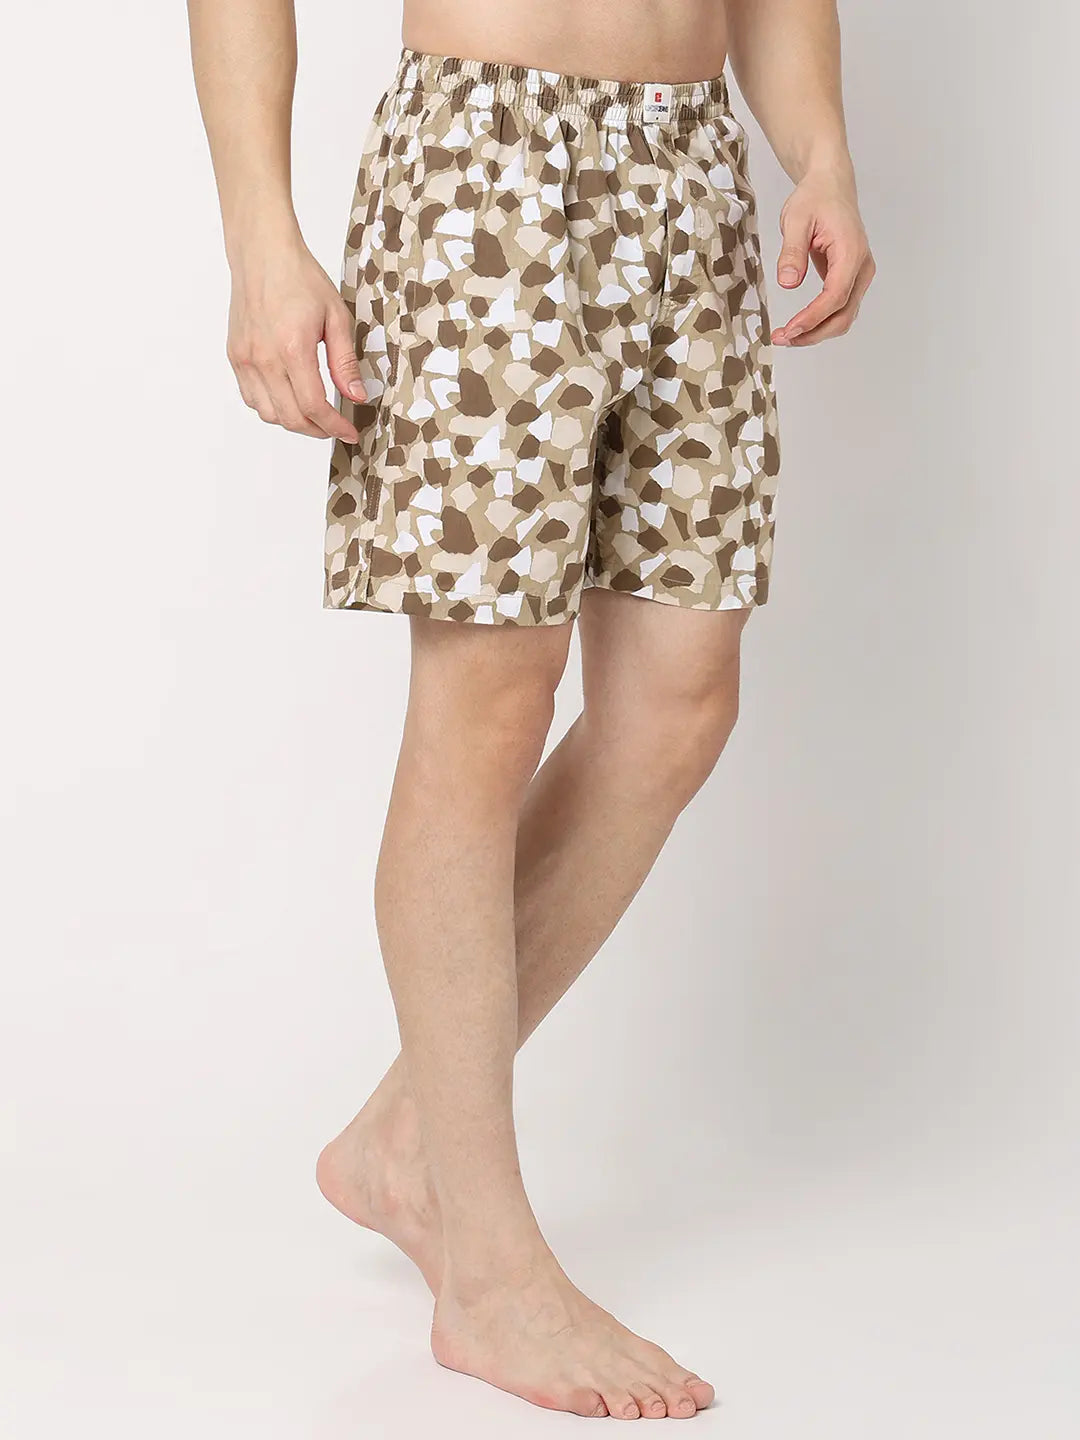 Underjeans by Spykar Men Premium Beige Cotton Blend Regular Fit Boxer Shorts